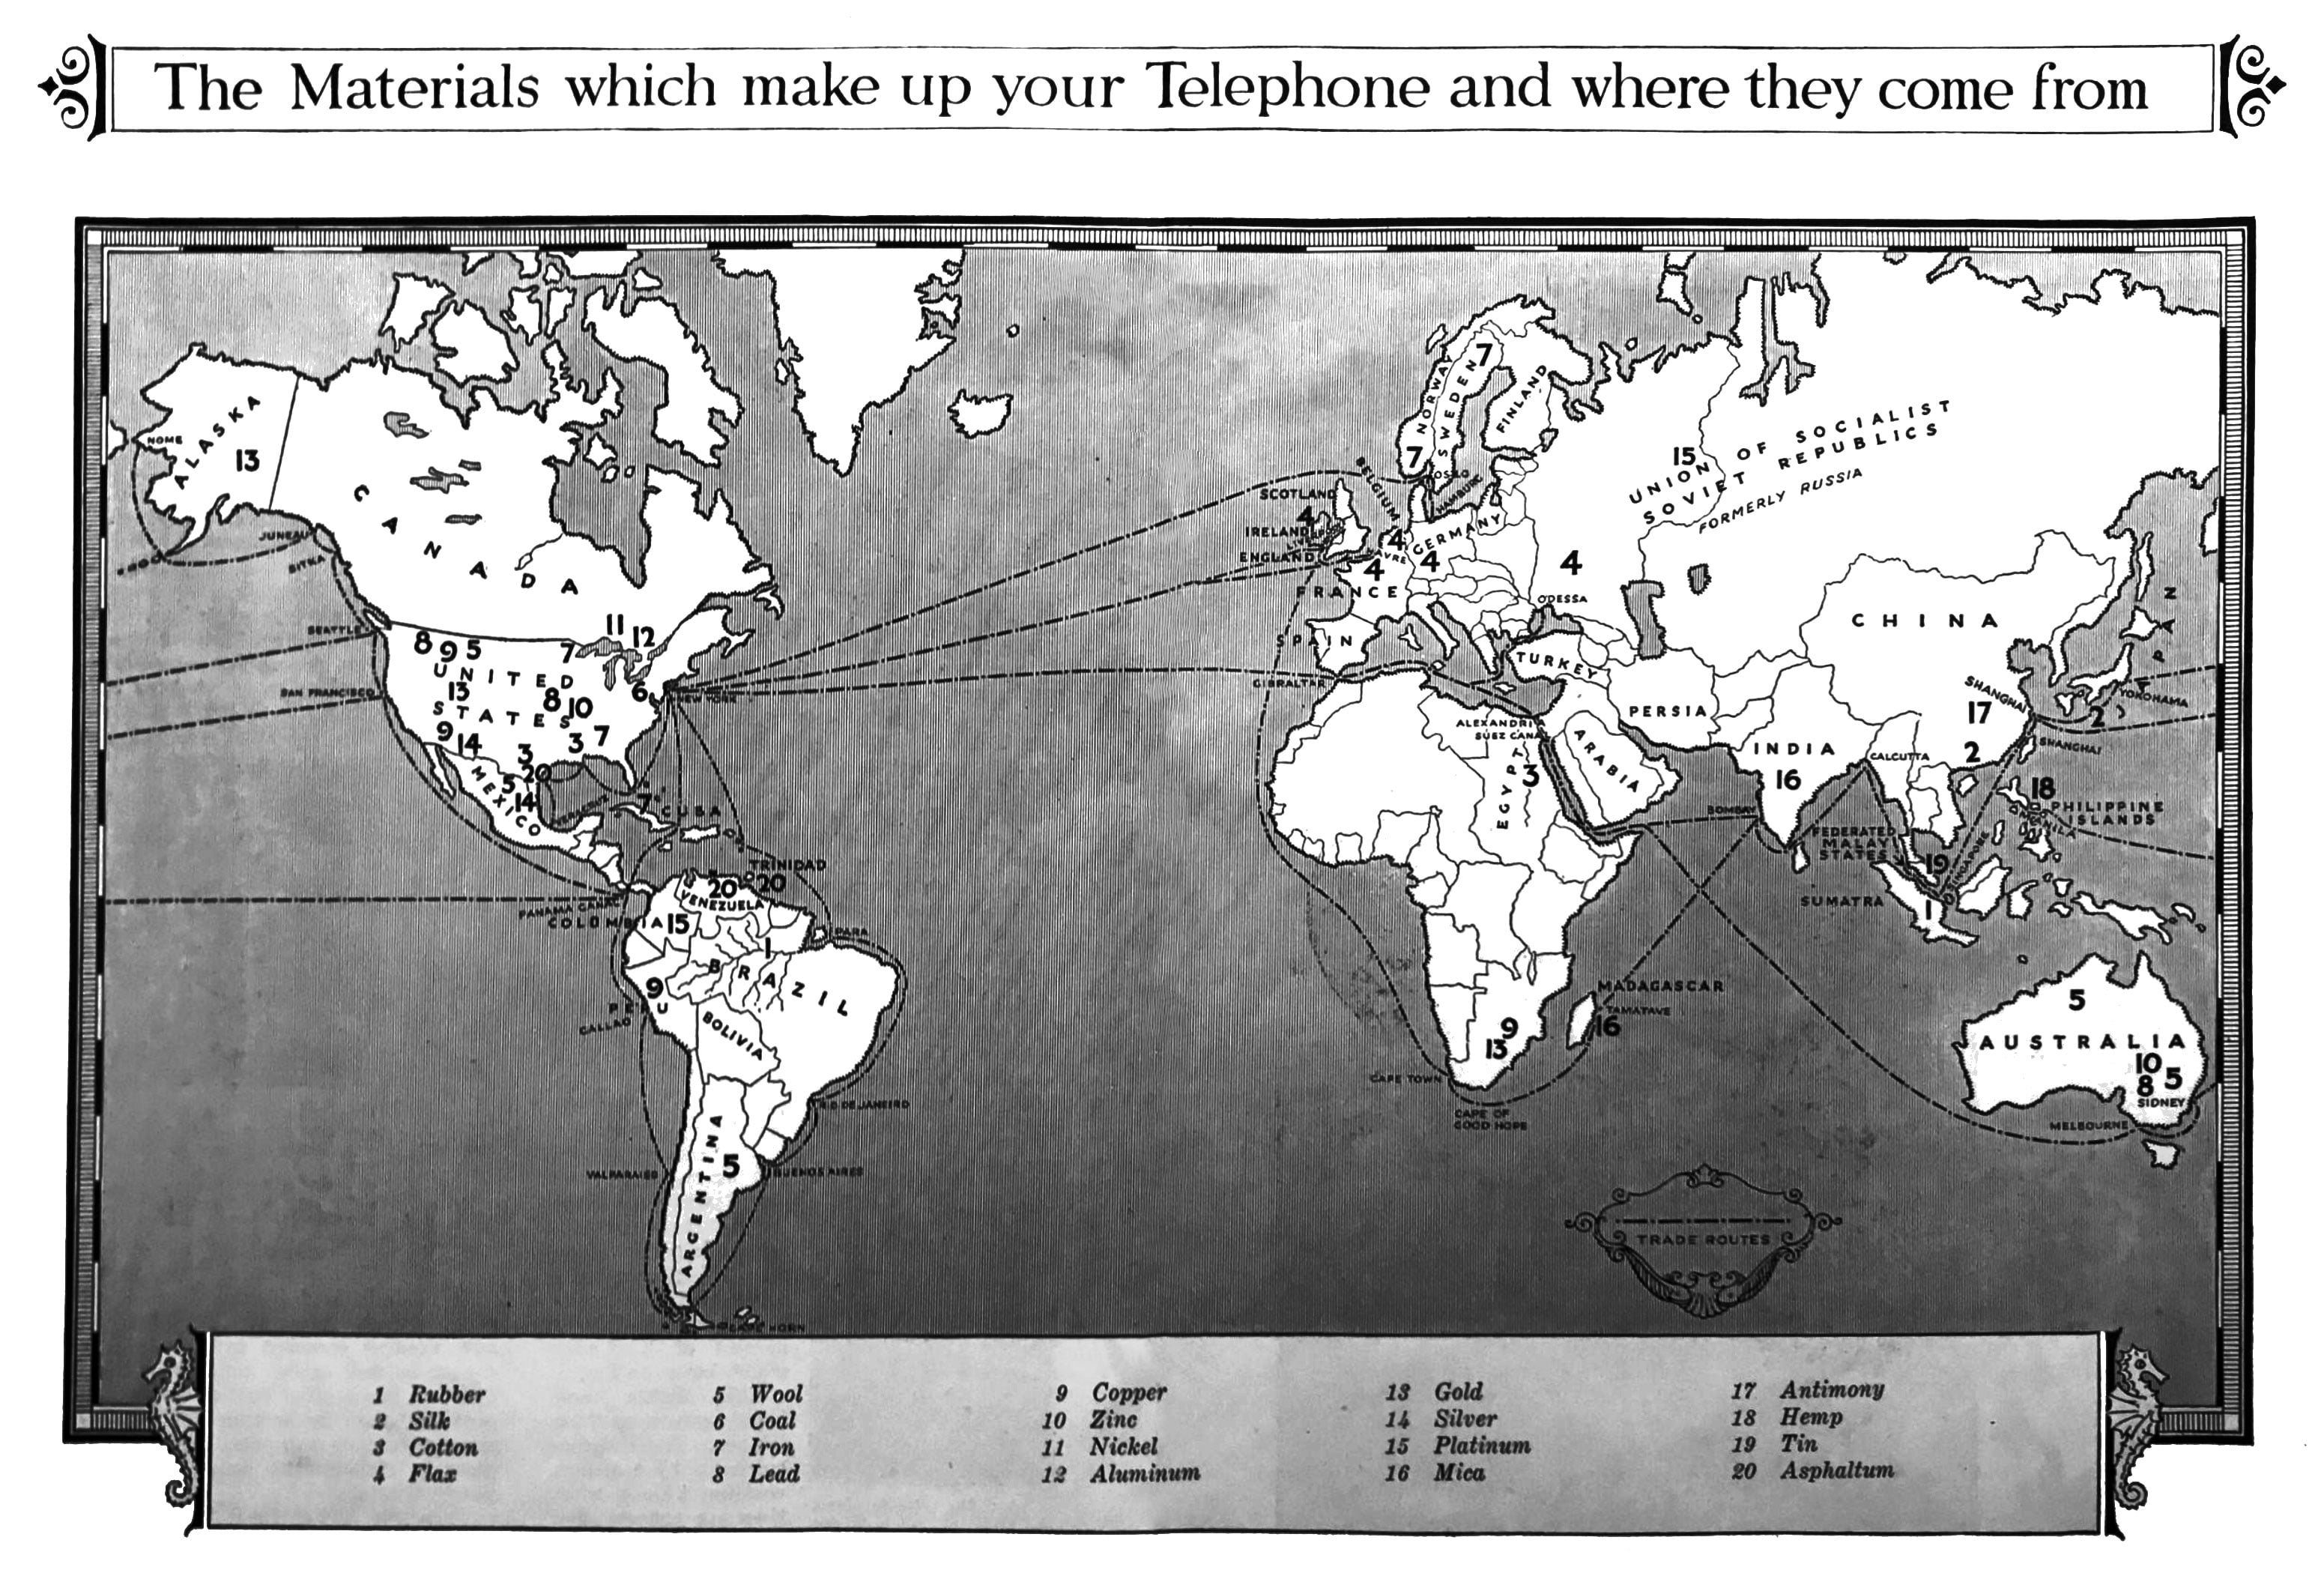 Telephone Materials